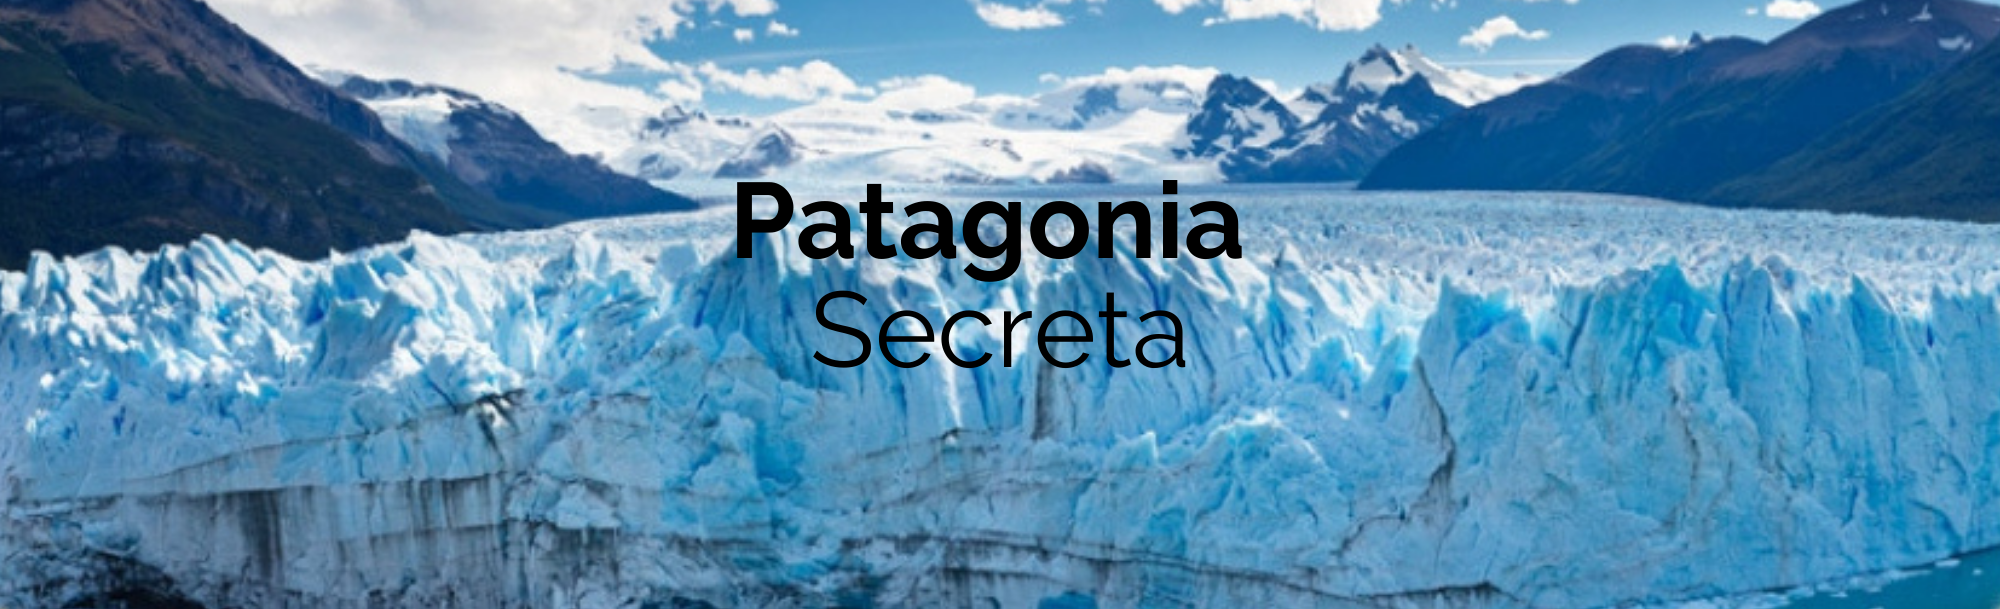 Patagonia Secreta